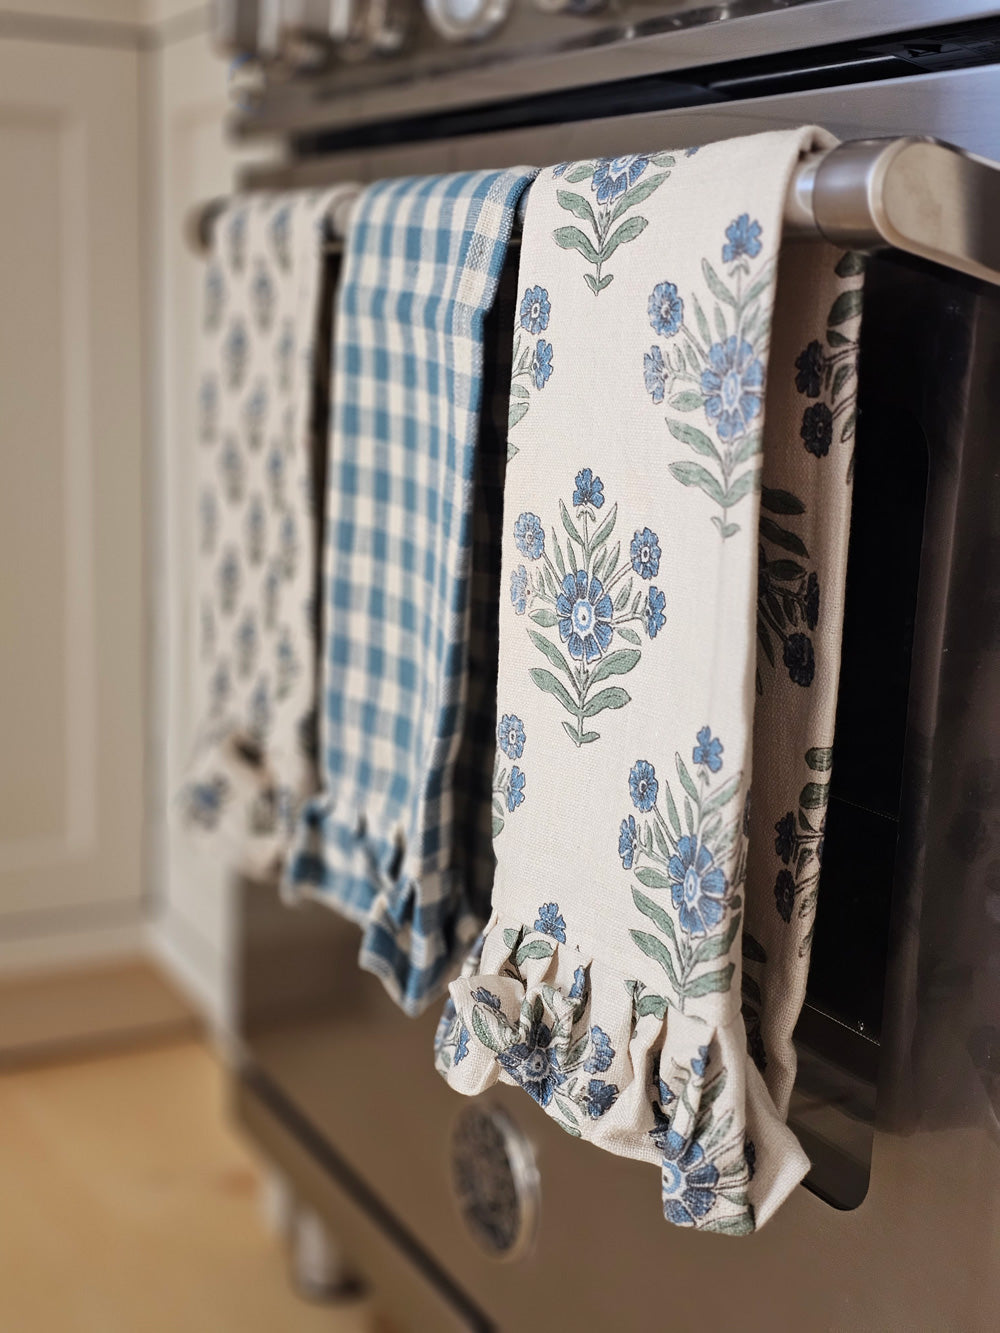 Cotton Tea Towels Block Print Kitchen Towels Dish Cloths Set of 2